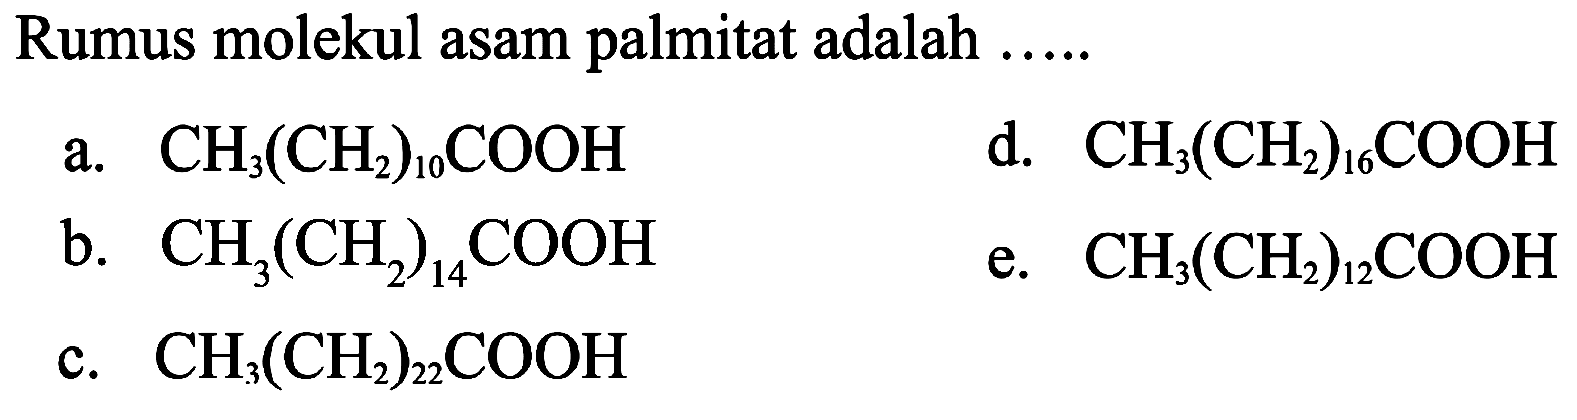 Rumus molekul asam palmitat adalah .....
a.  CH_(3)(CH_(2))_(10) COOH 
d.  CH_(3)(CH_(2))_(16) COOH 
b.  CH_(3)(CH_(2))_(14) COOH 
e.  CH_(3)(CH_(2))_(12) COOH 
c.  CH_(3)(CH_(2))_(22) COOH 